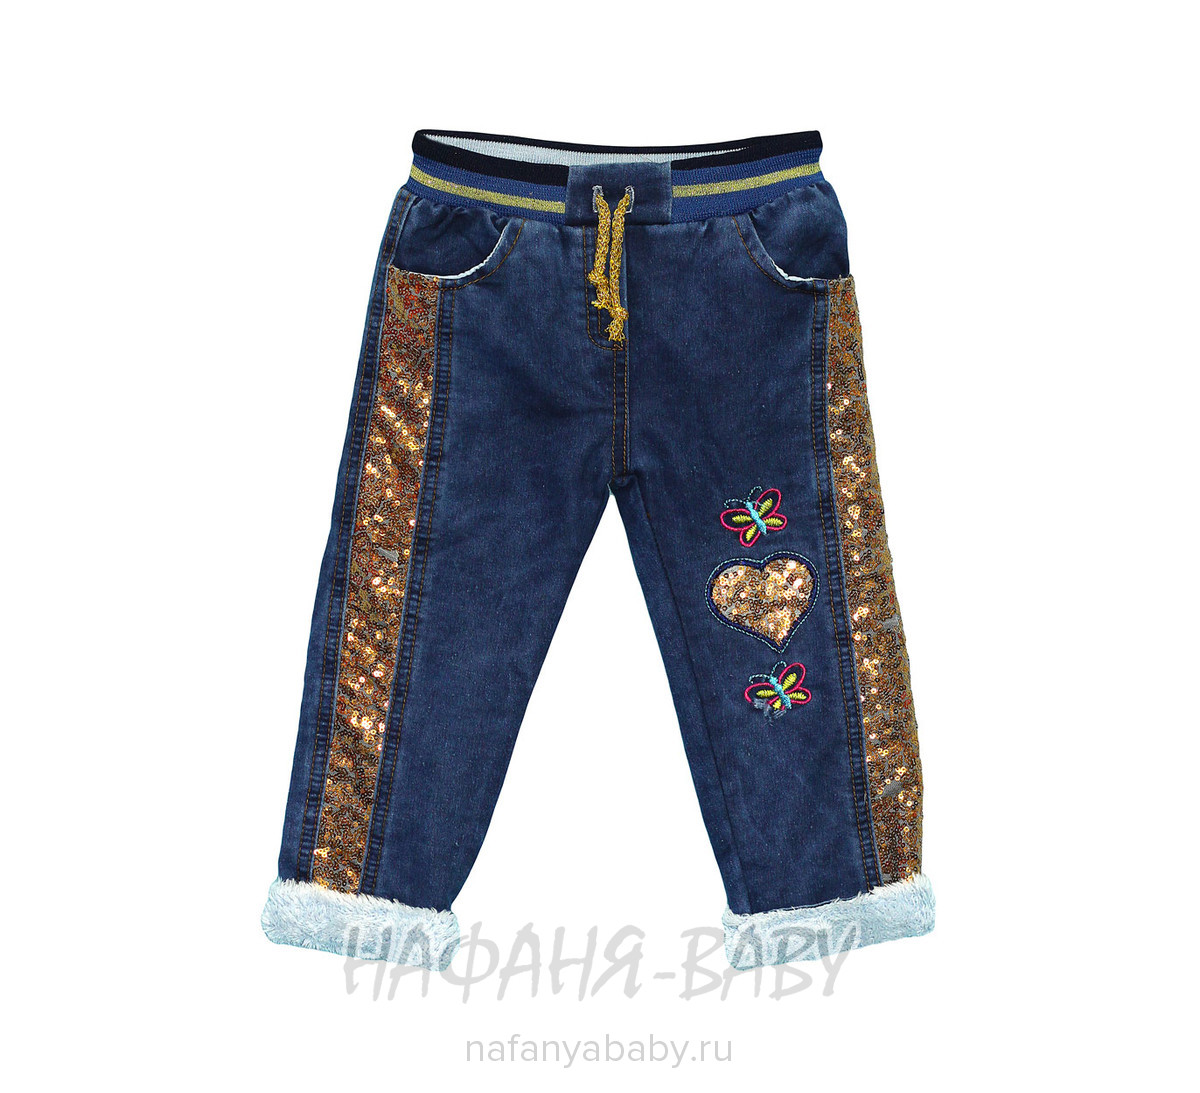 Зимние джинсы для девочки AKIRA арт: 3801, 1-4 года, оптом Турция